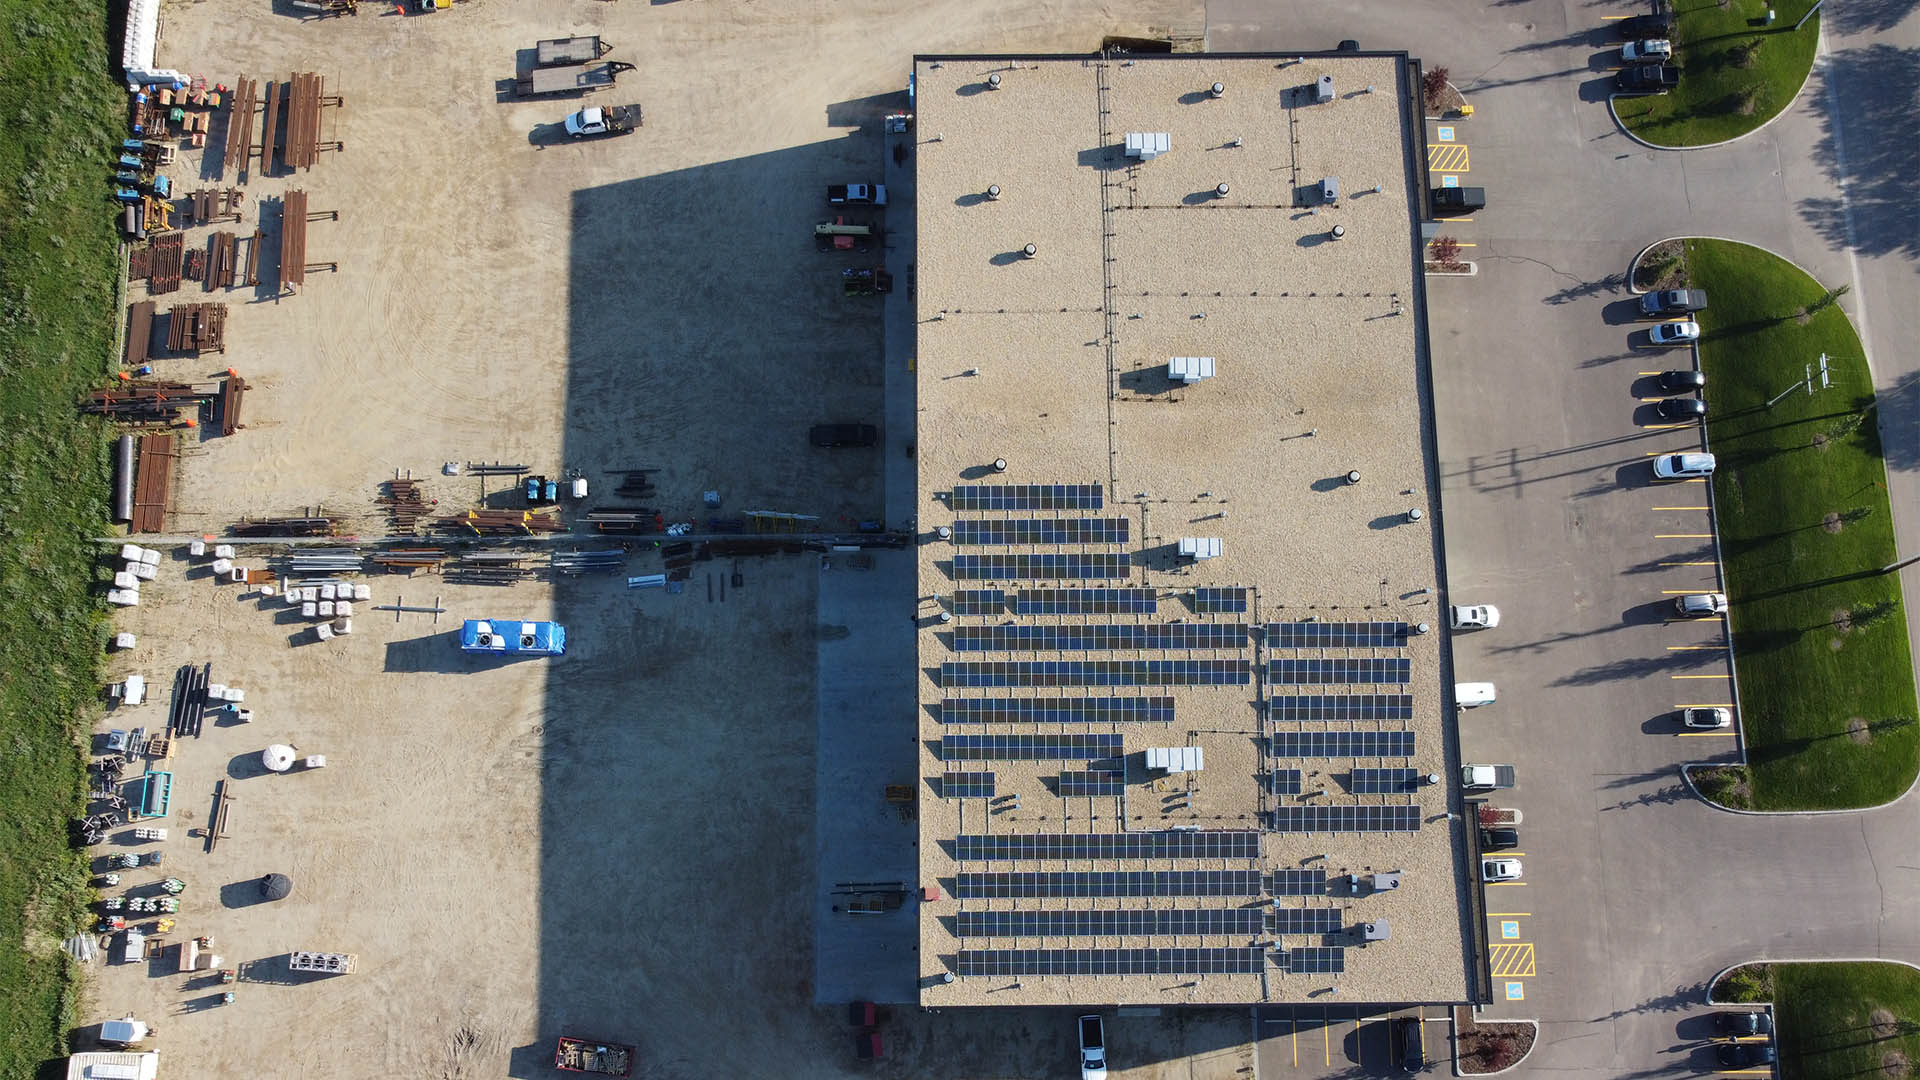 Overhead shot of solar array